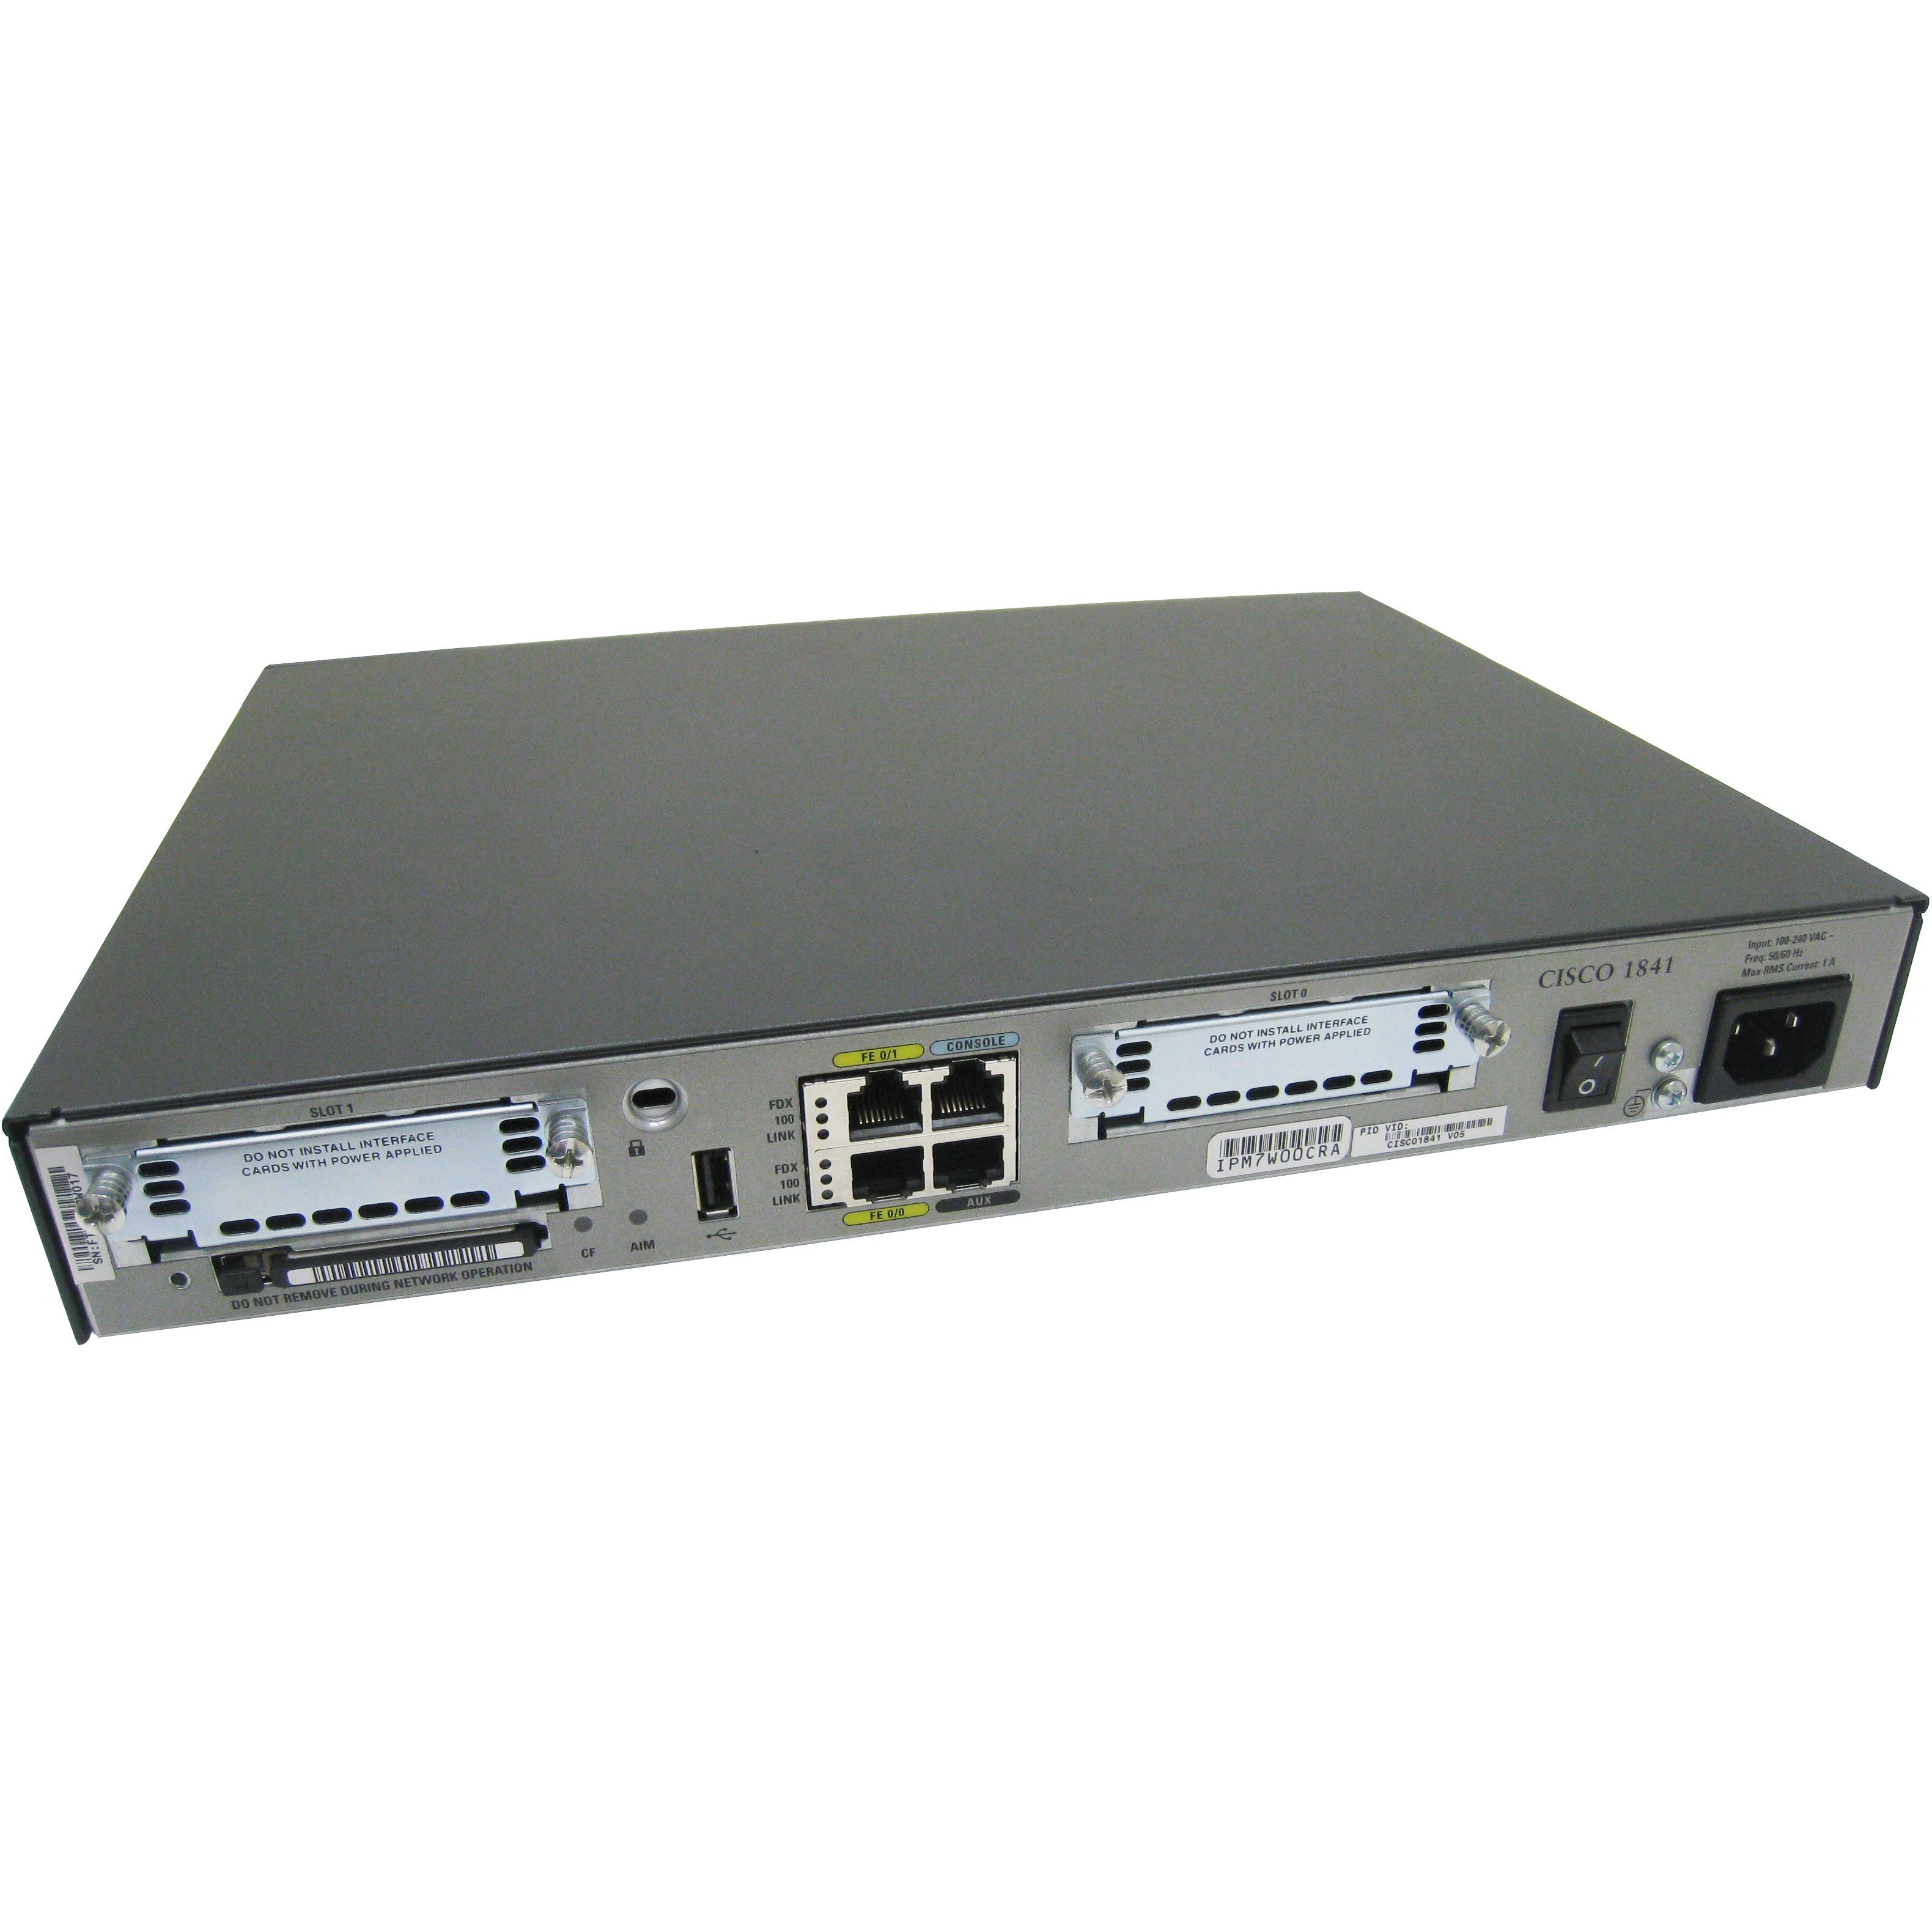 Cisco CISCO1841-ADSL-DG